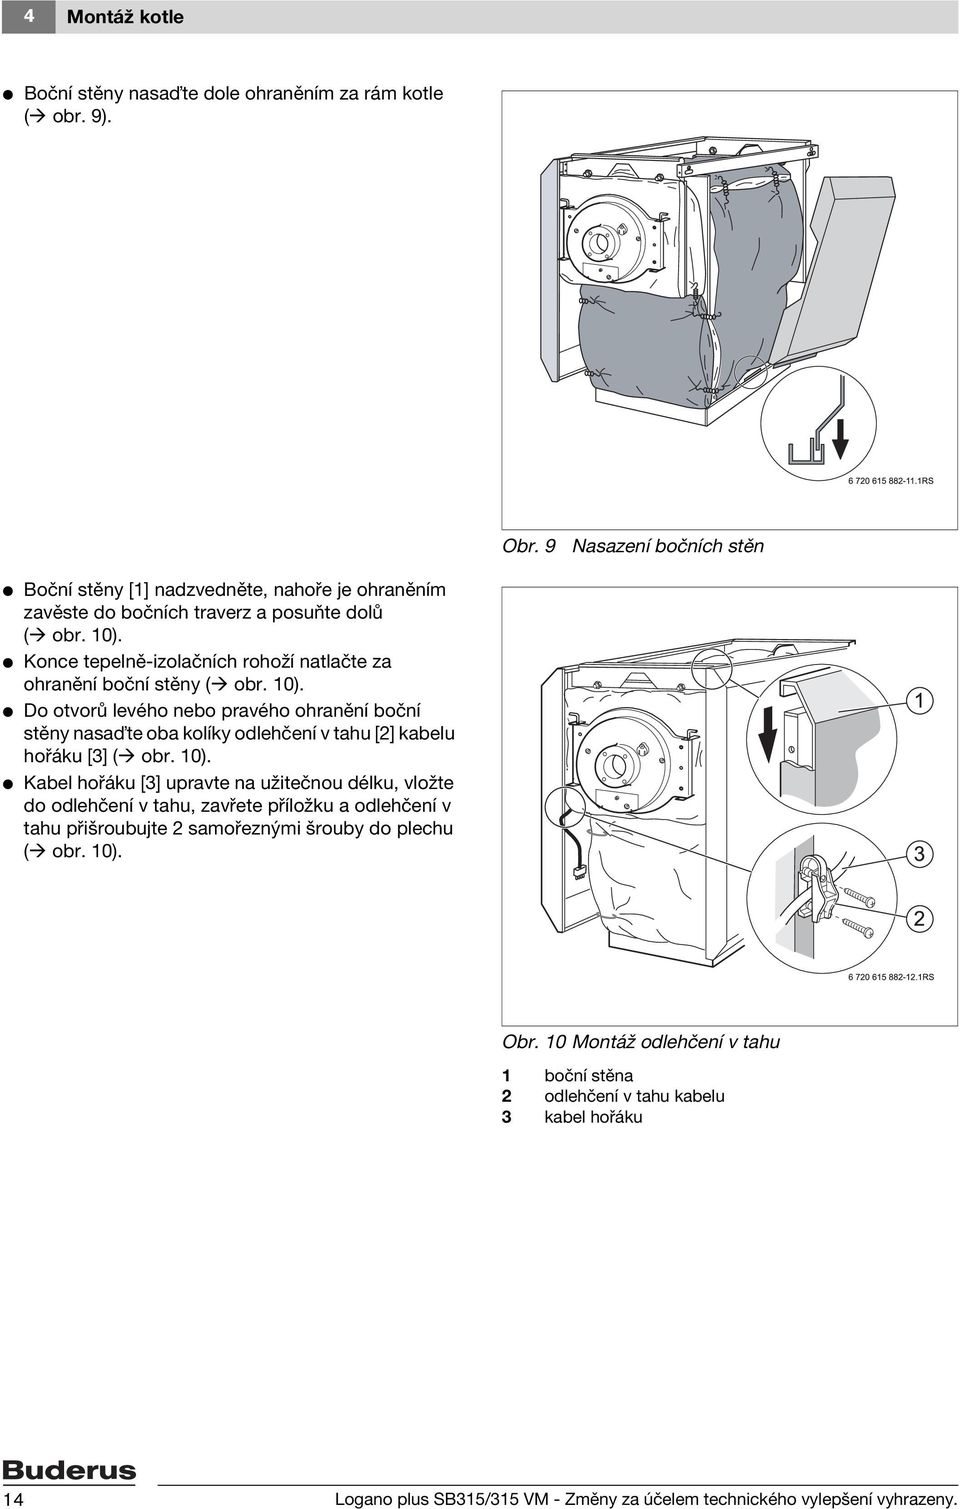 V Konce tepelně-izolačních rohoží natlačte za ohranění boční stěny ( obr. 10).